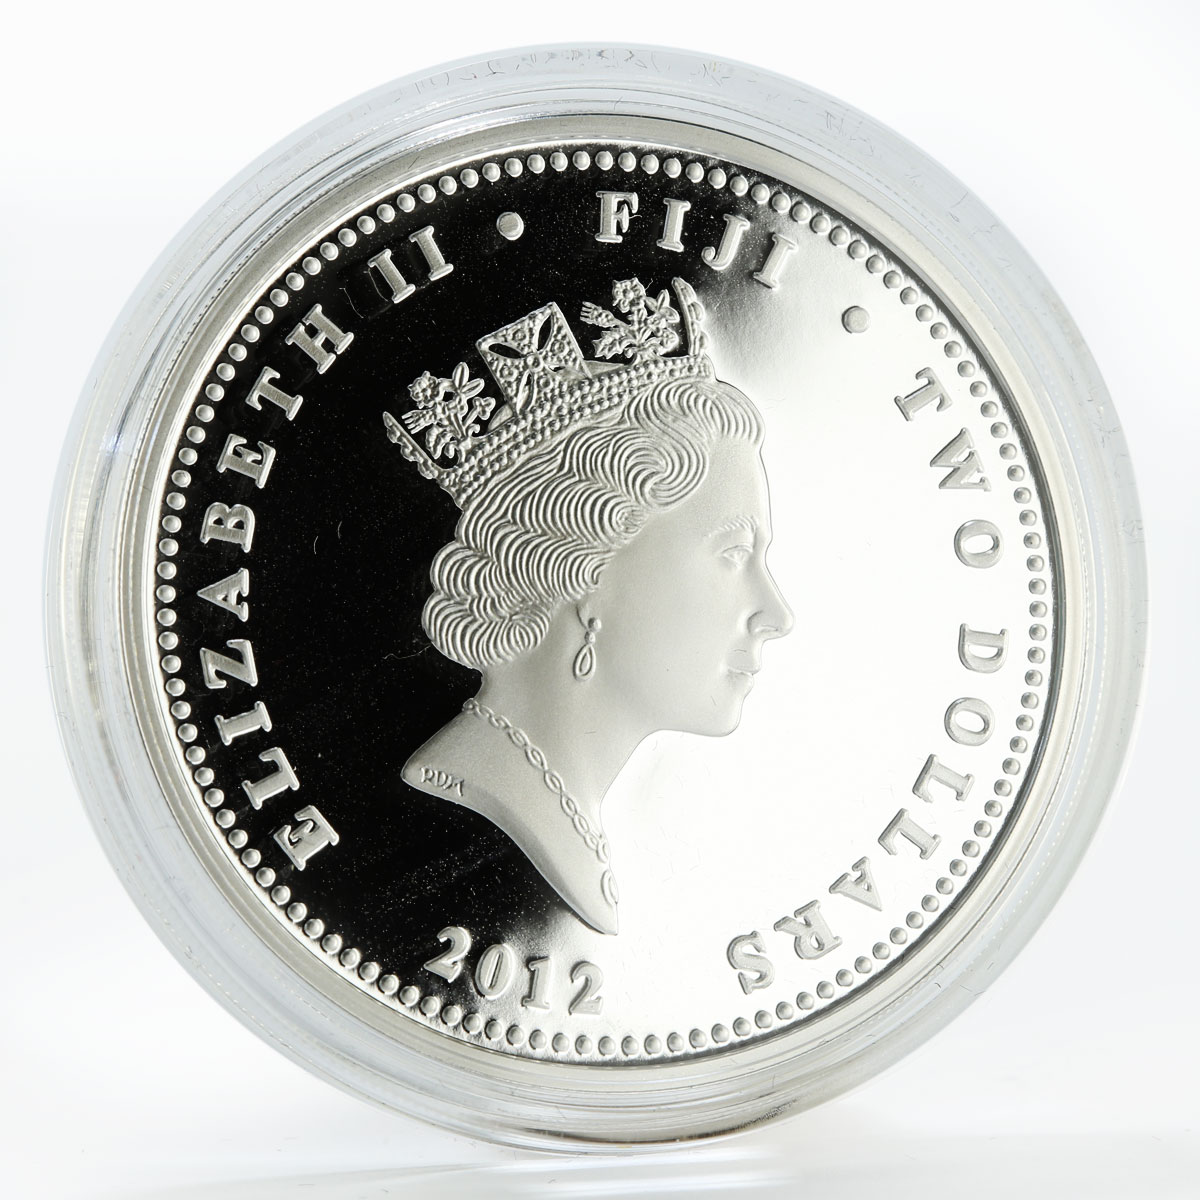 Fiji 2 dollars, a set of 3 coins Alexander III, Romanov family, silver coin 2012